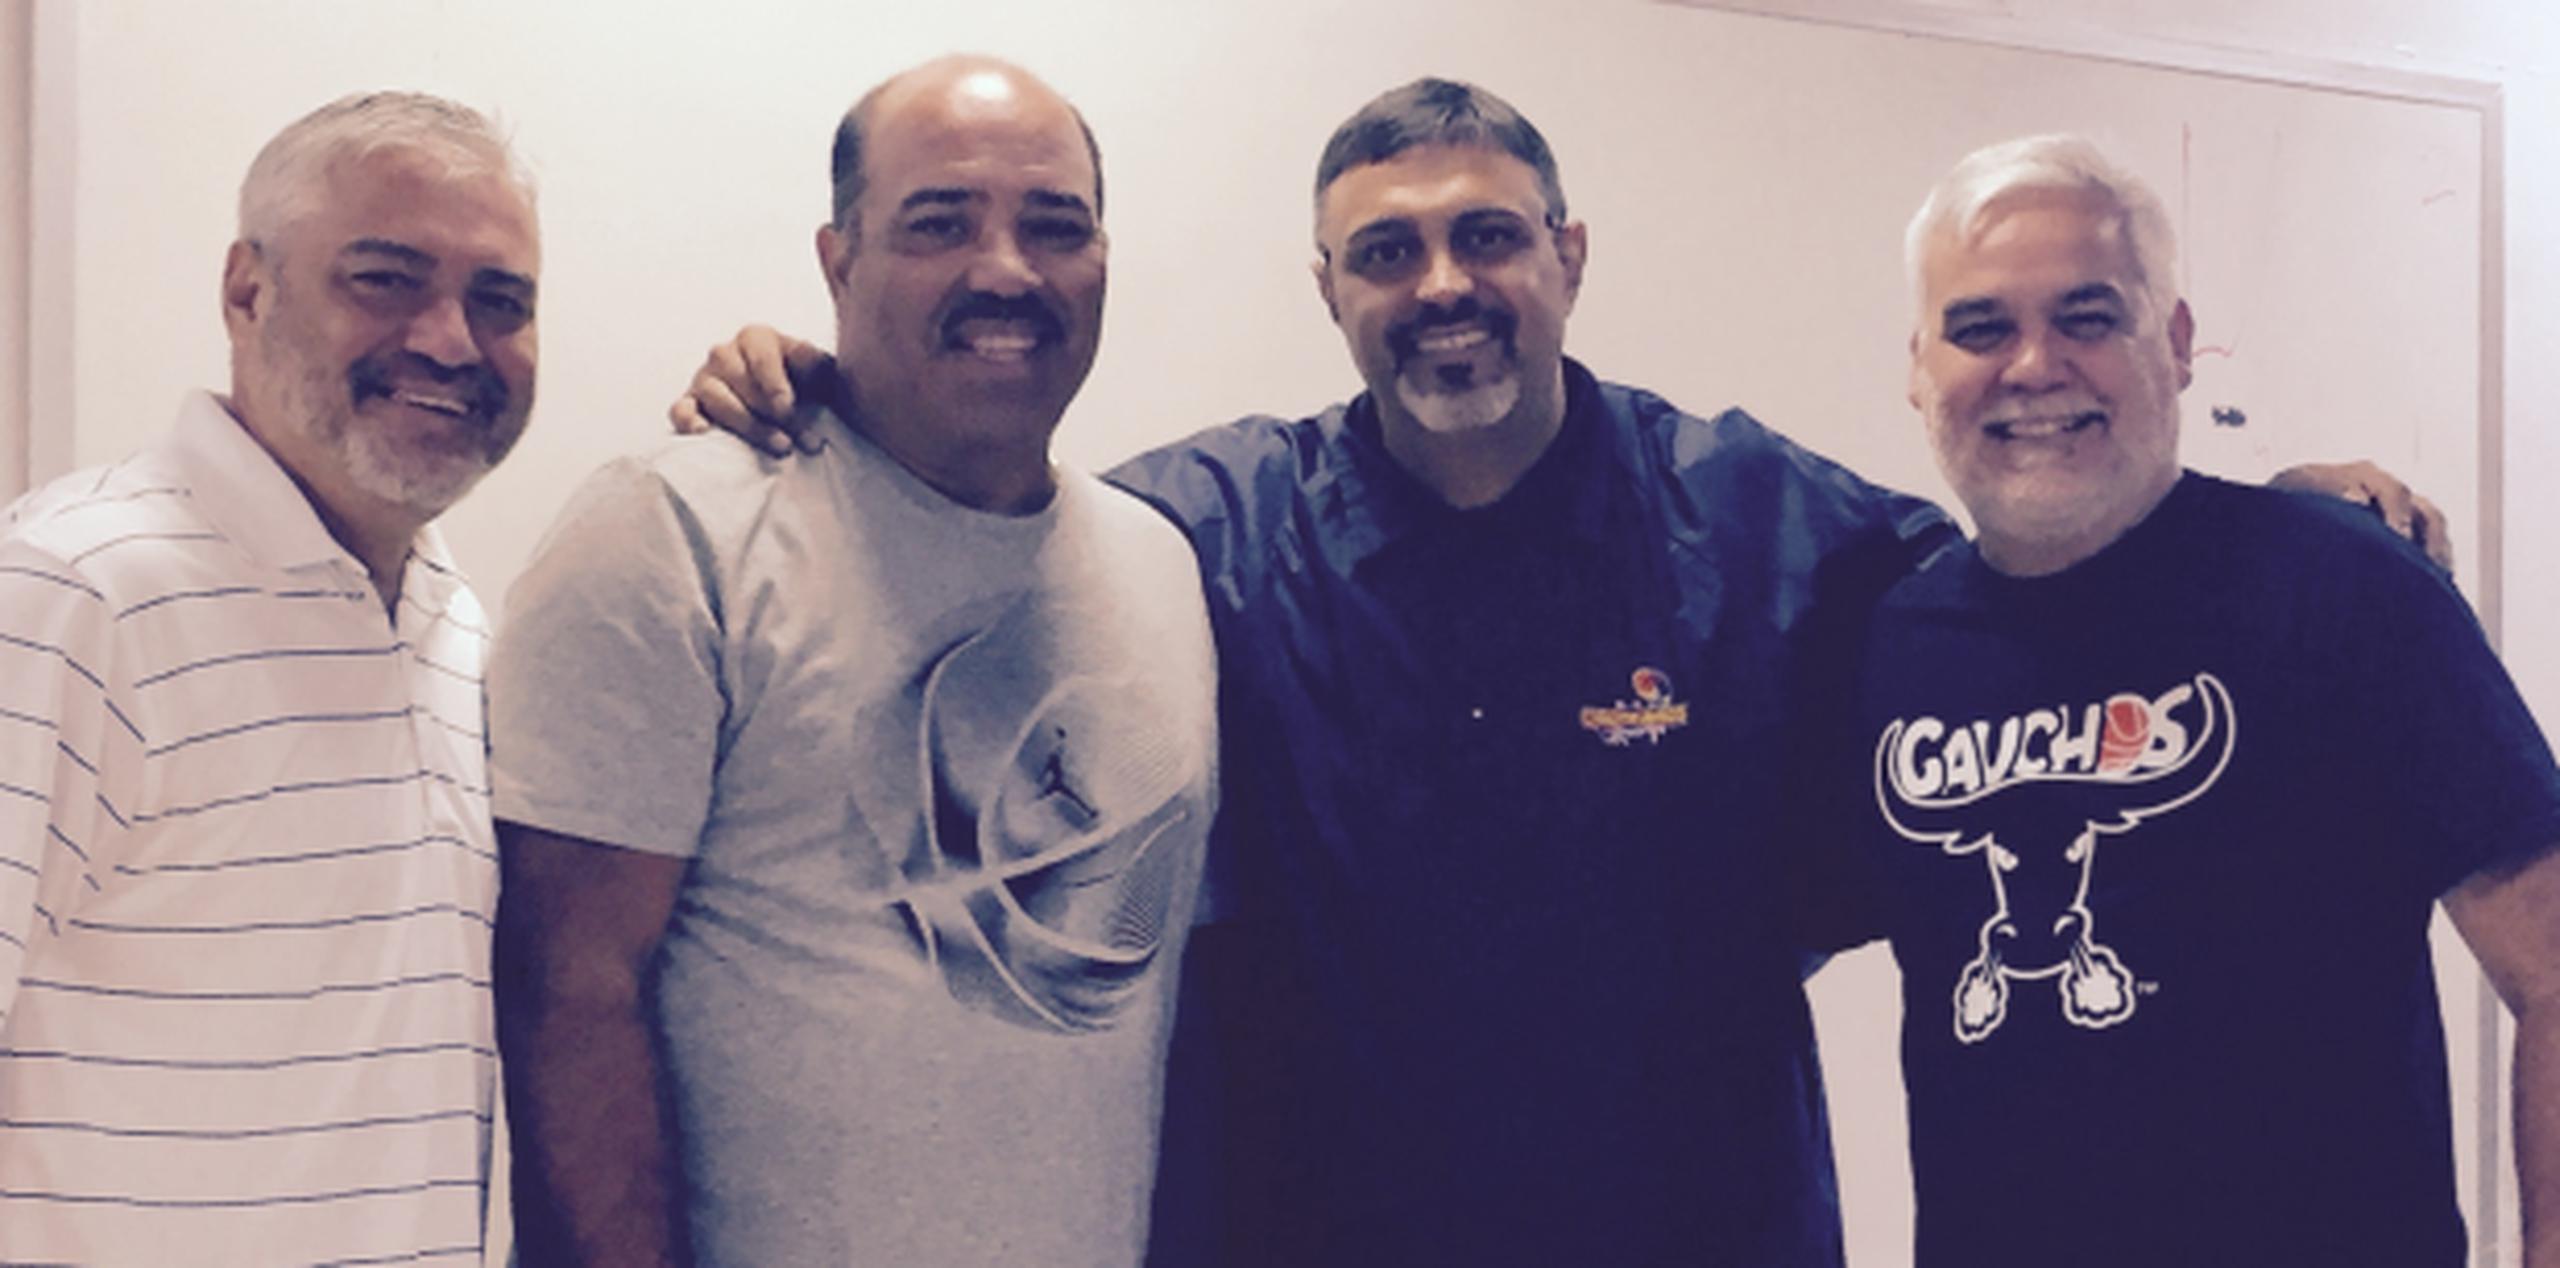 Casiano se reunió hoy con sus asistentes Rafael “Chino” Torres. Manolo Cintrón y Omar Gonzalez. (Suministrada)